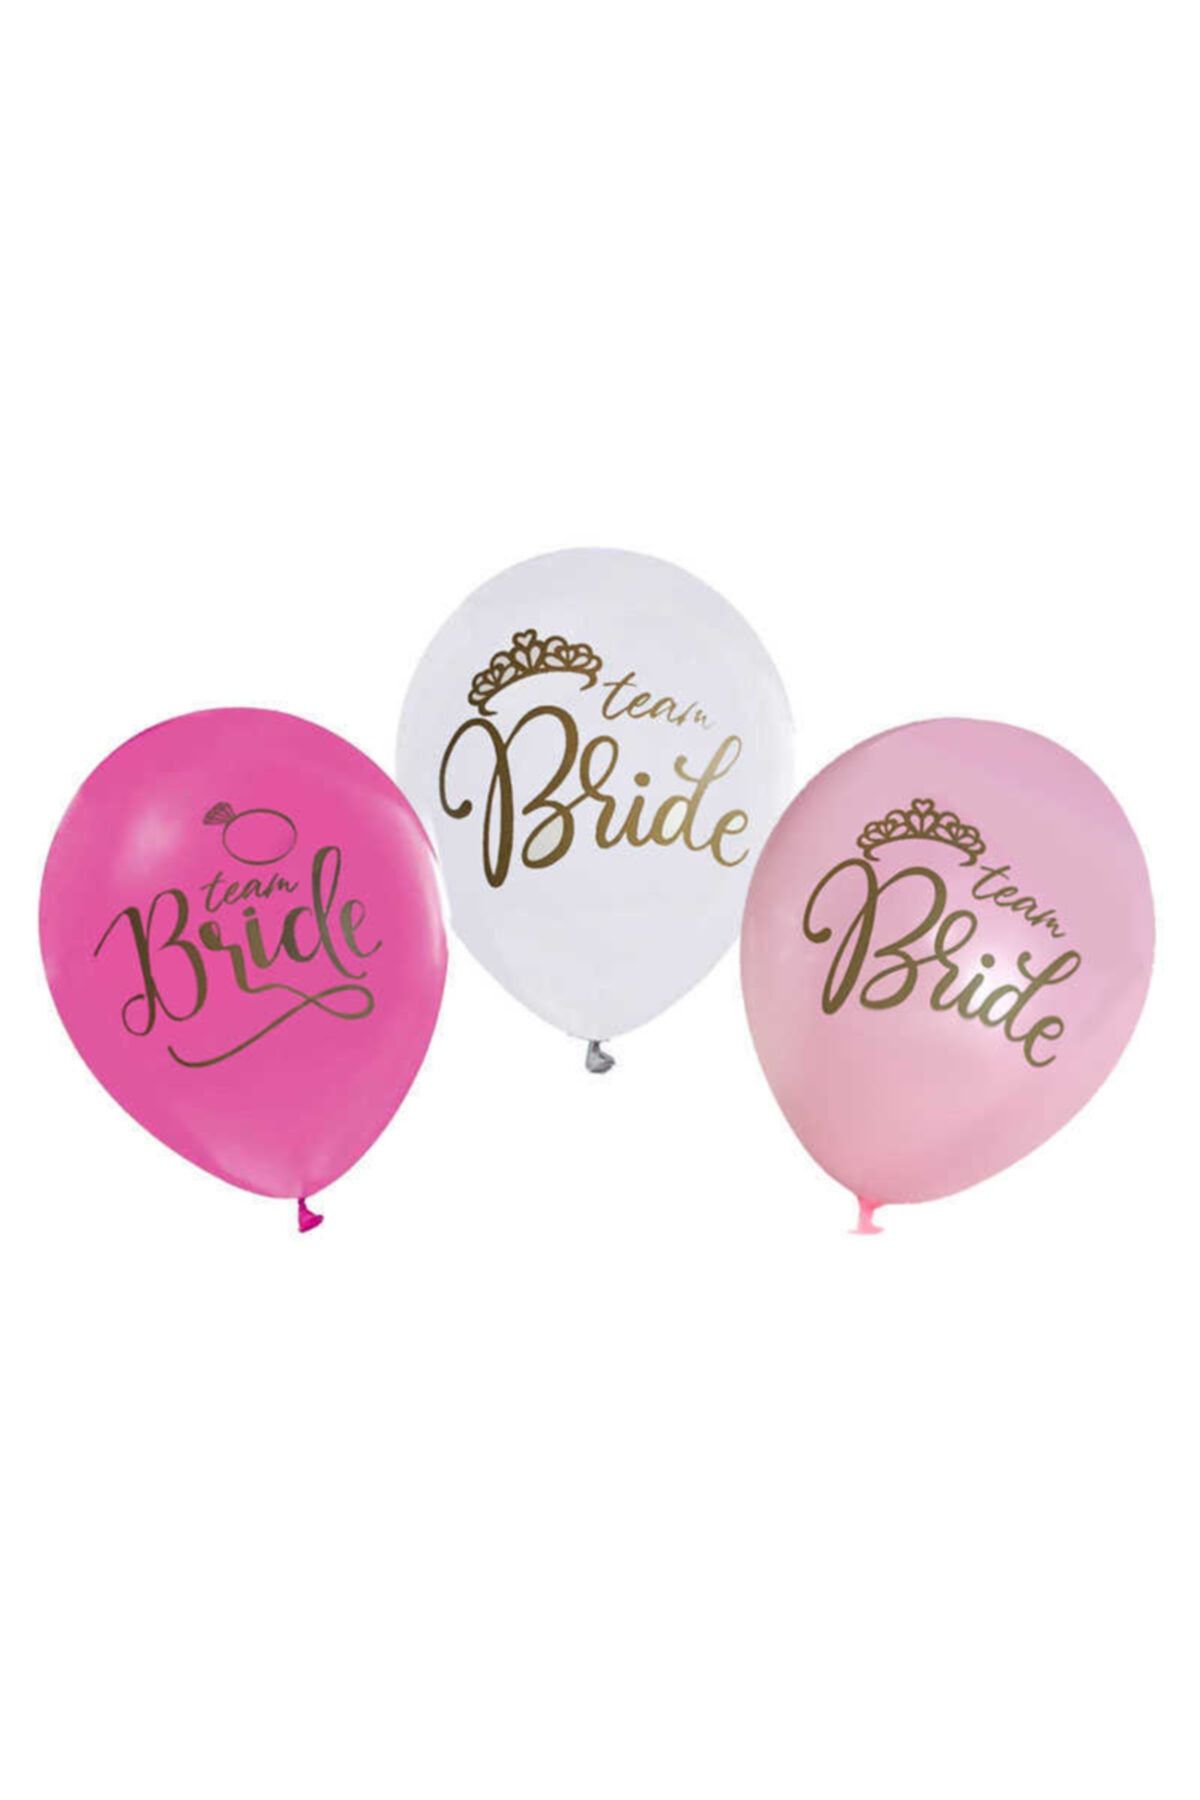 ELITETIME 20 Adet Balon Bride Yazılı Karışık Renk Parti Süsleme Malzemesi